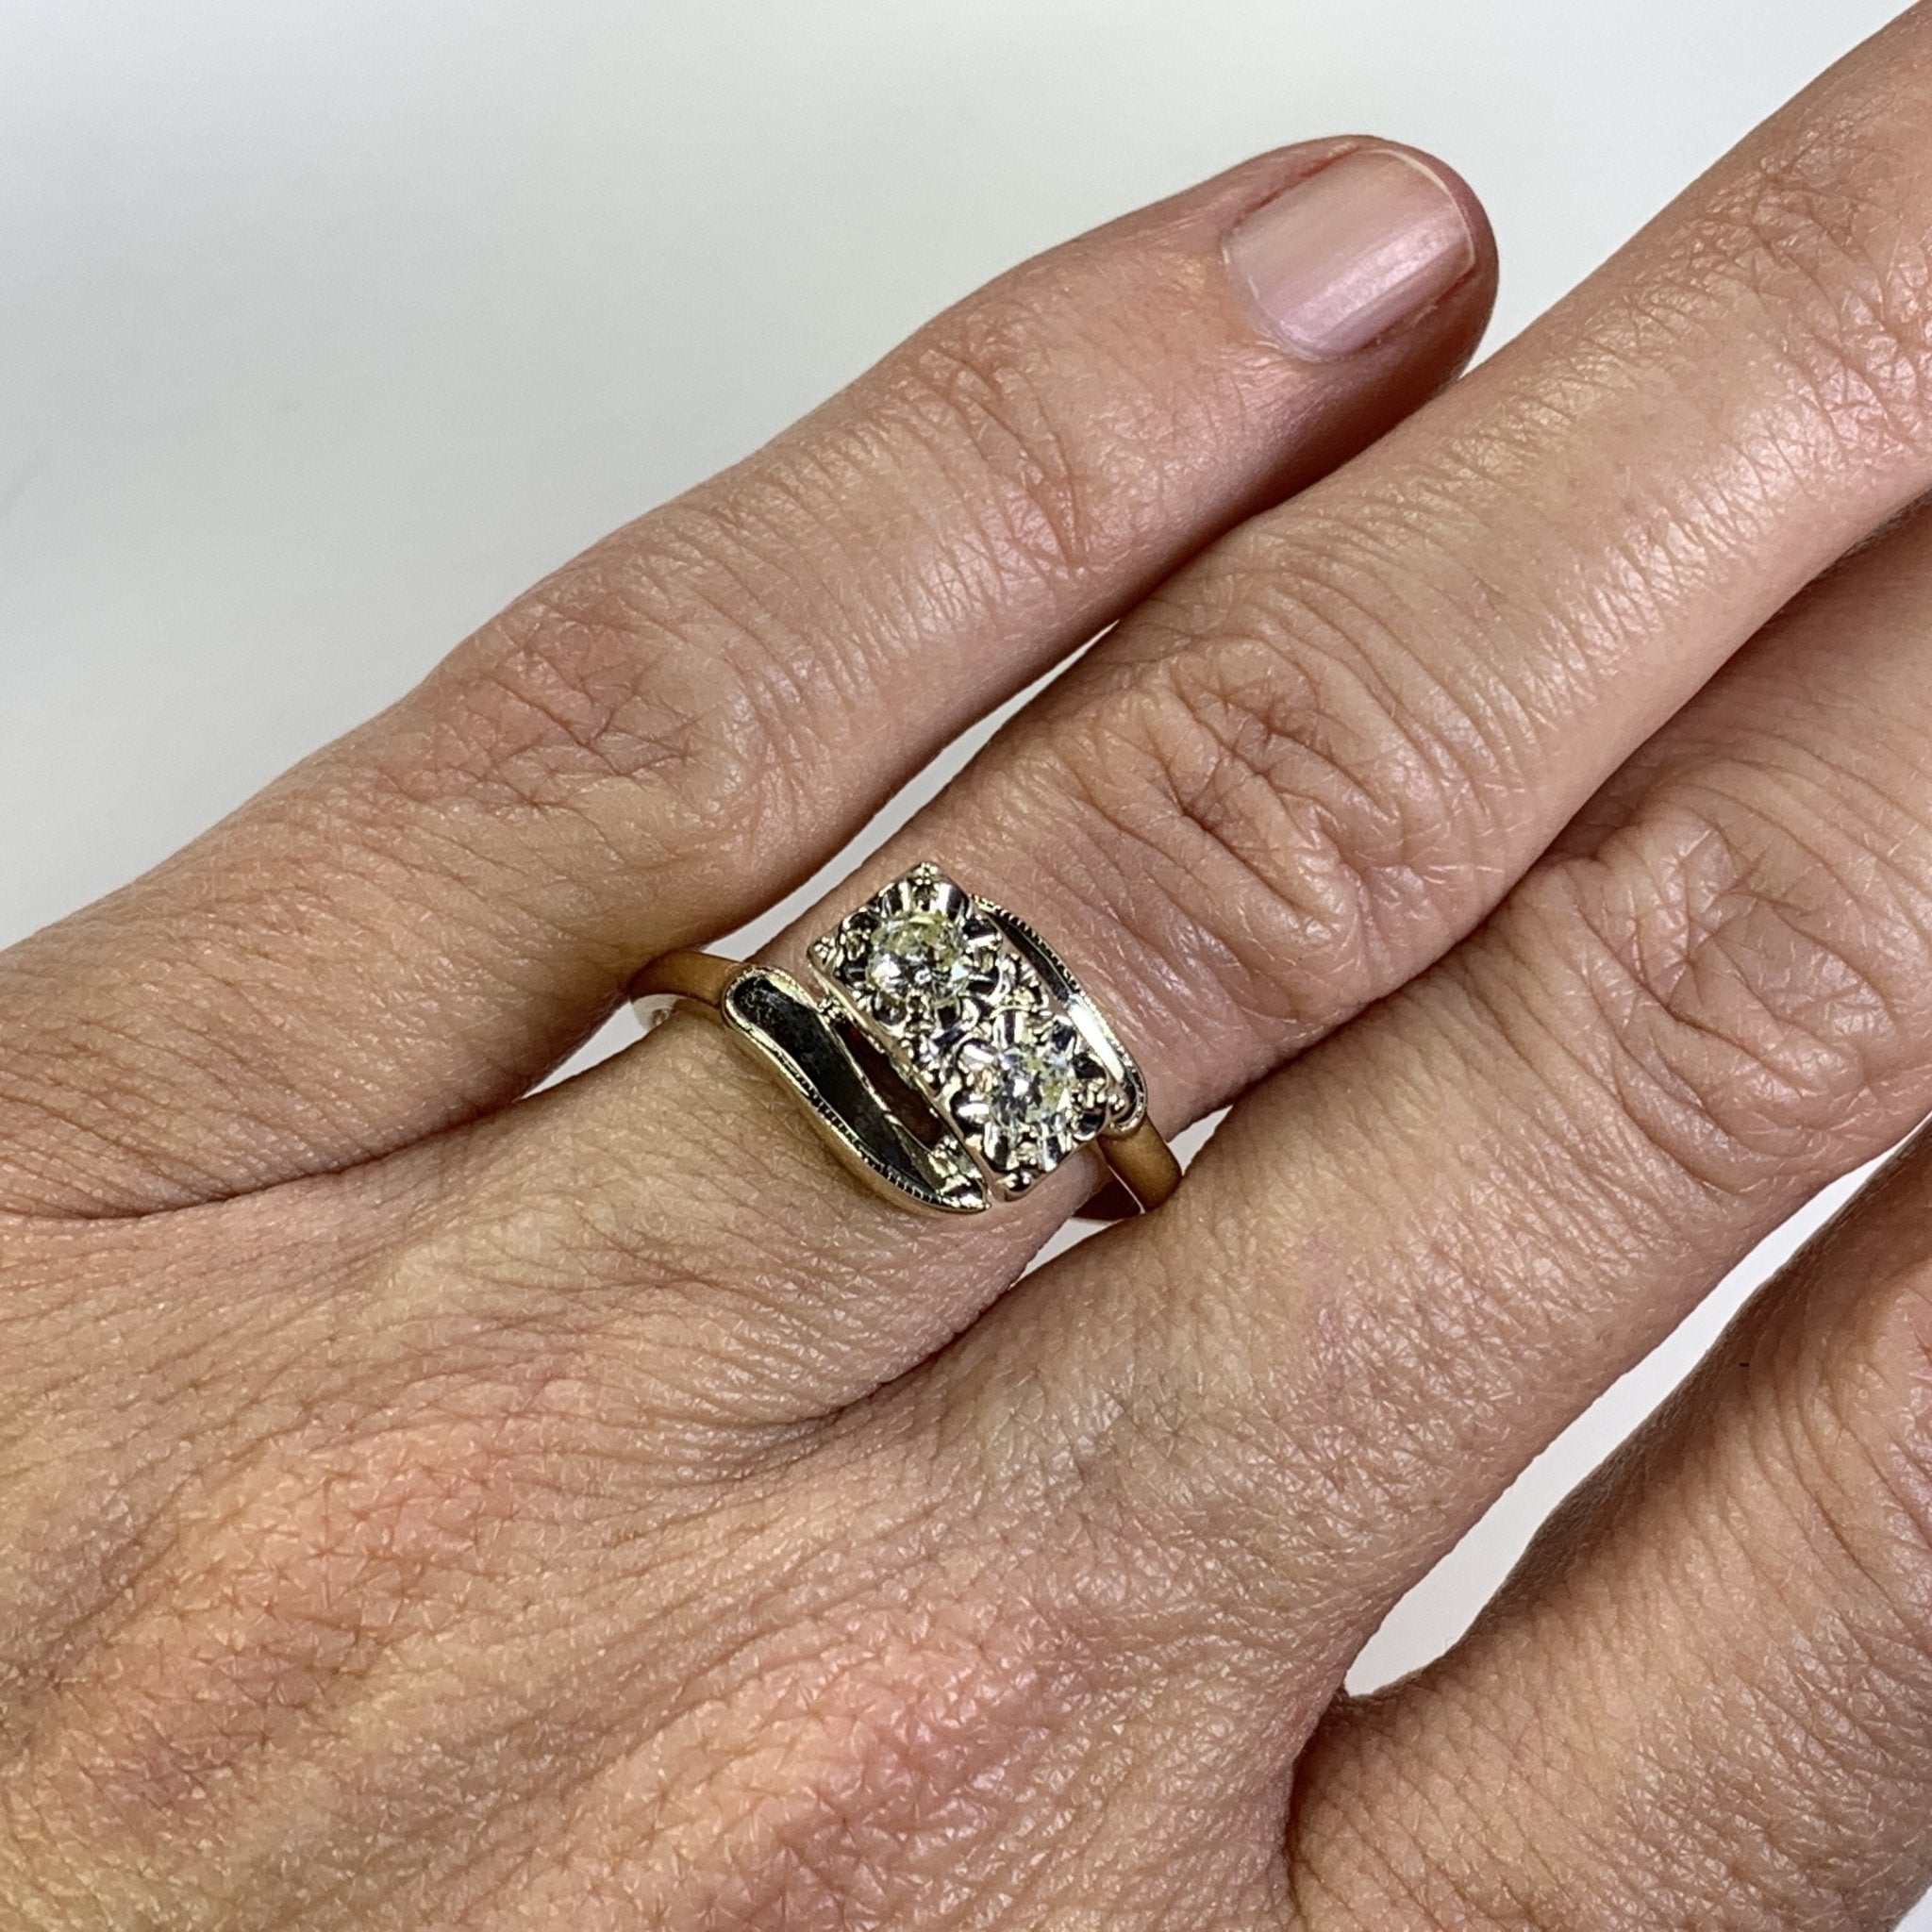 My New 10th Anniversary Ring. | Wedding anniversary rings, Anniversary rings  for her, Anniversary rings 10 year